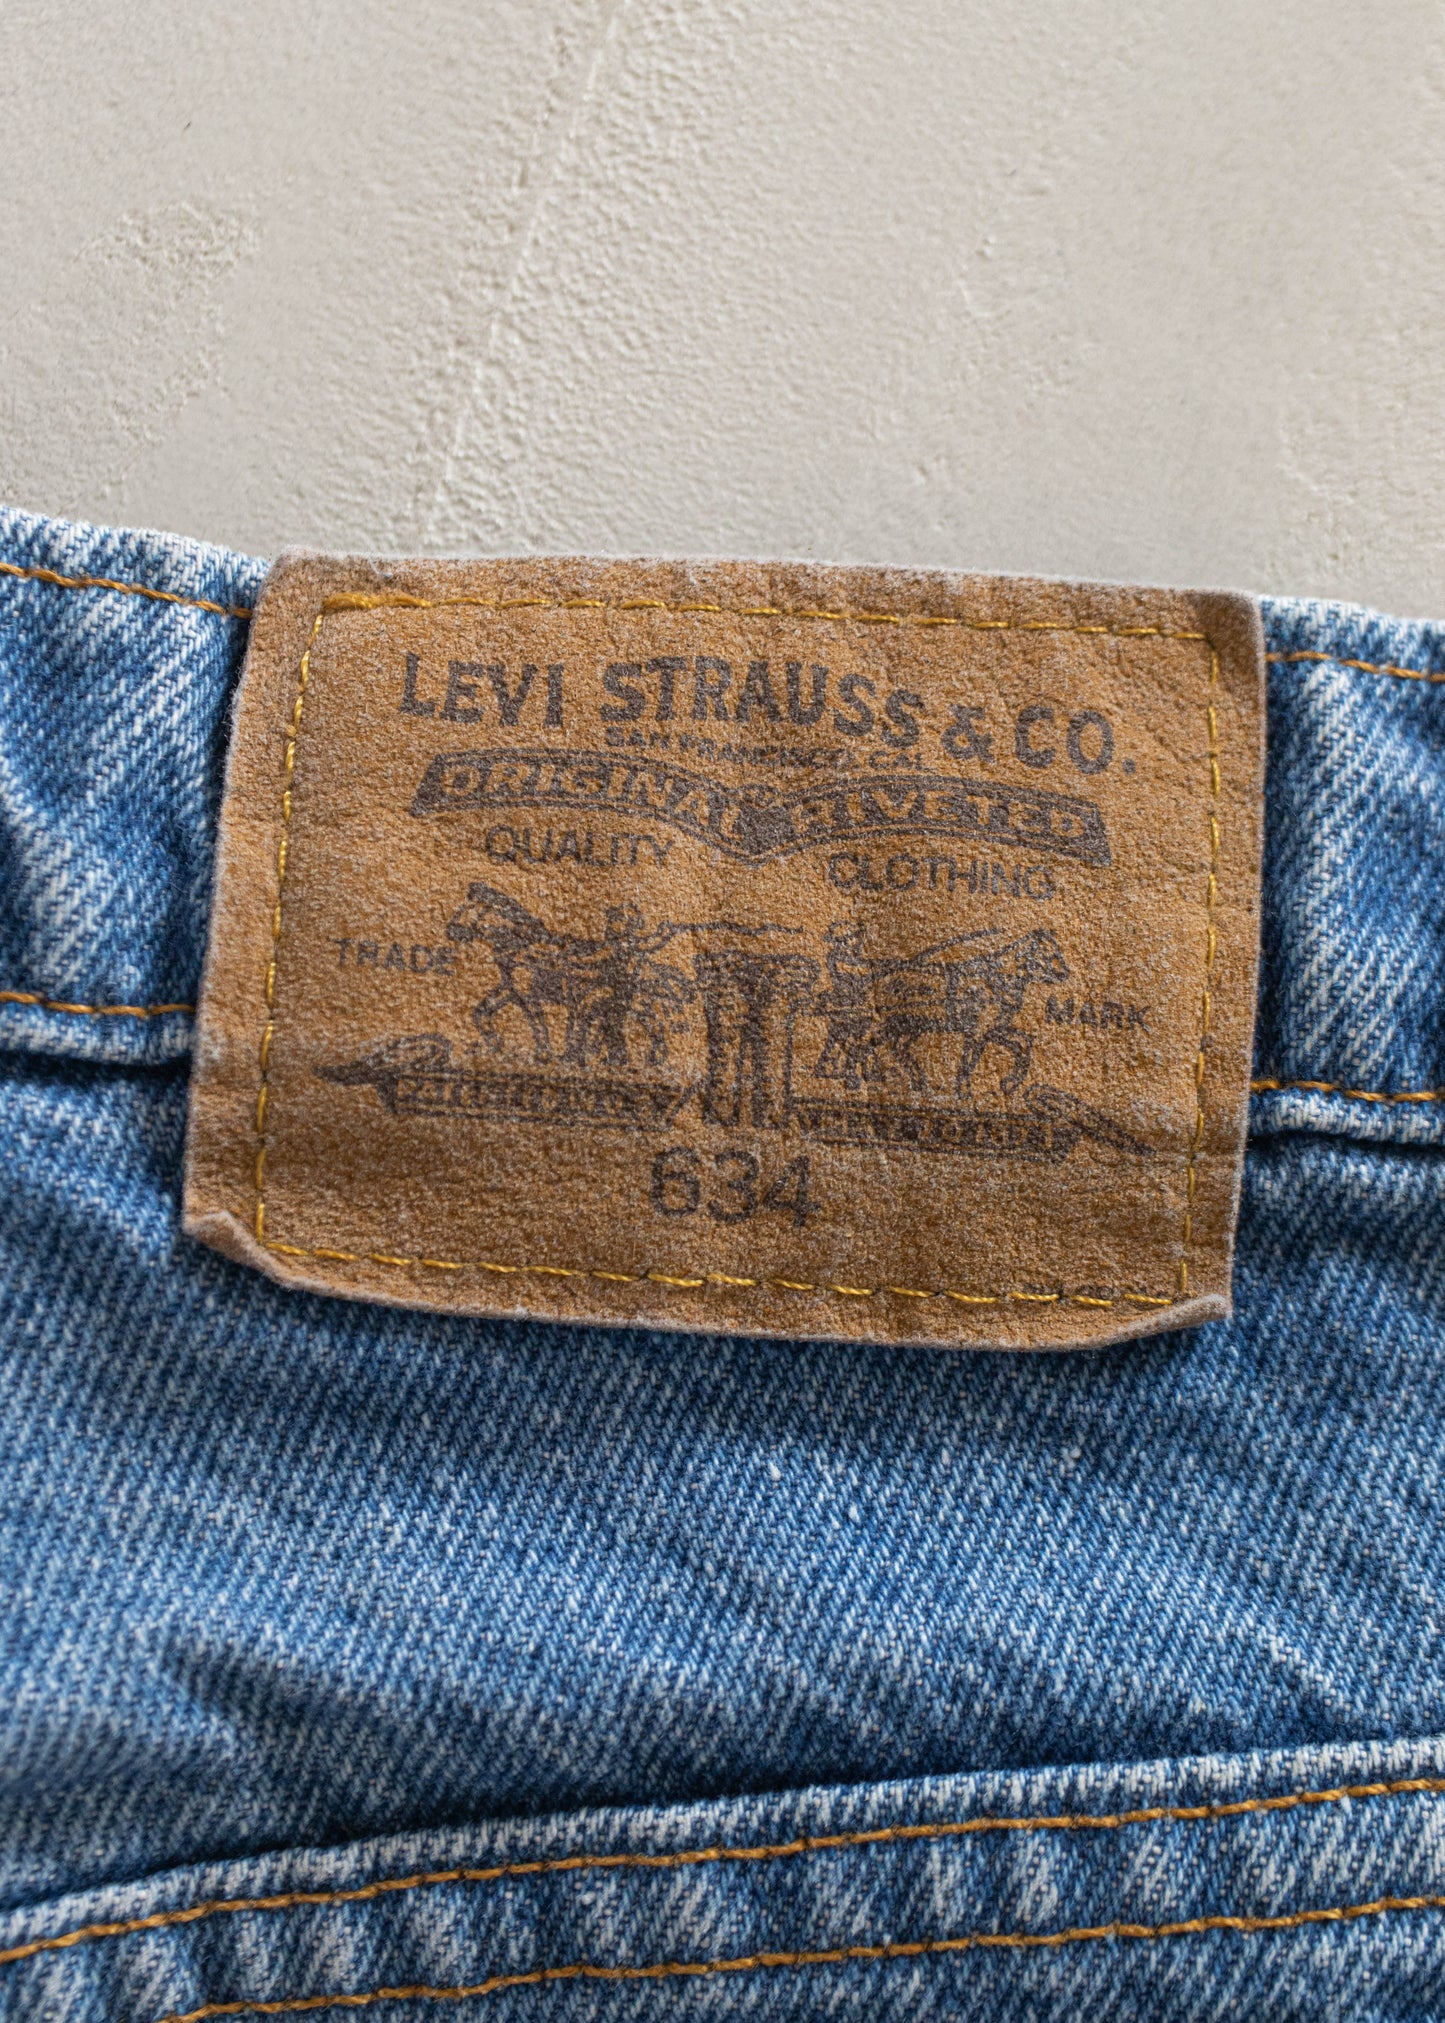 1980s Levi's 634 Orange Tab Midwash Jeans Size Women's 33 Men's 36